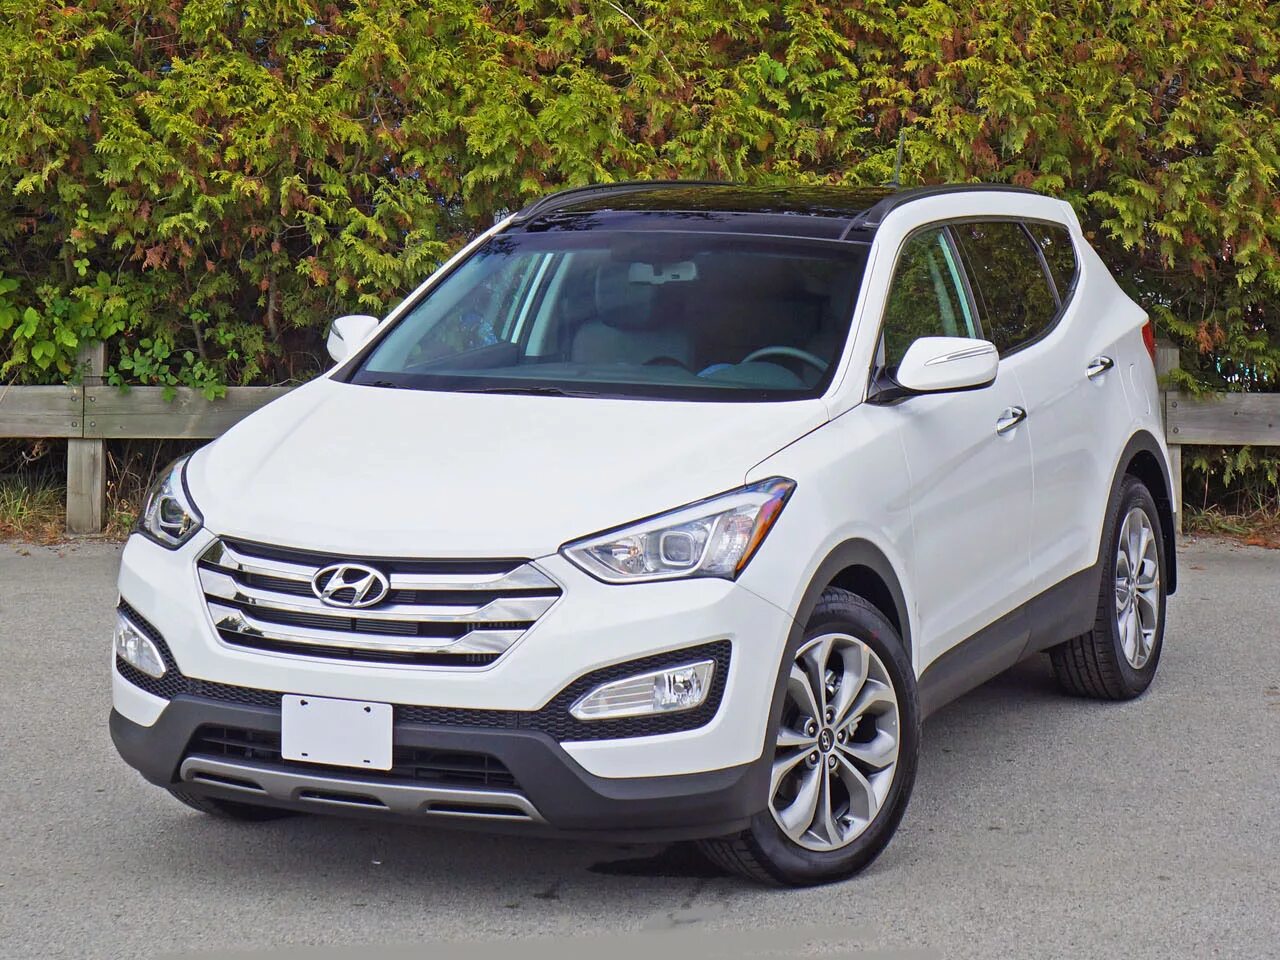 Hyundai Santa Fe 2016. Хендай Санта Фе 2016. Hyundai Санта Фе 2016. Хендай Санта Фе 3 2016.